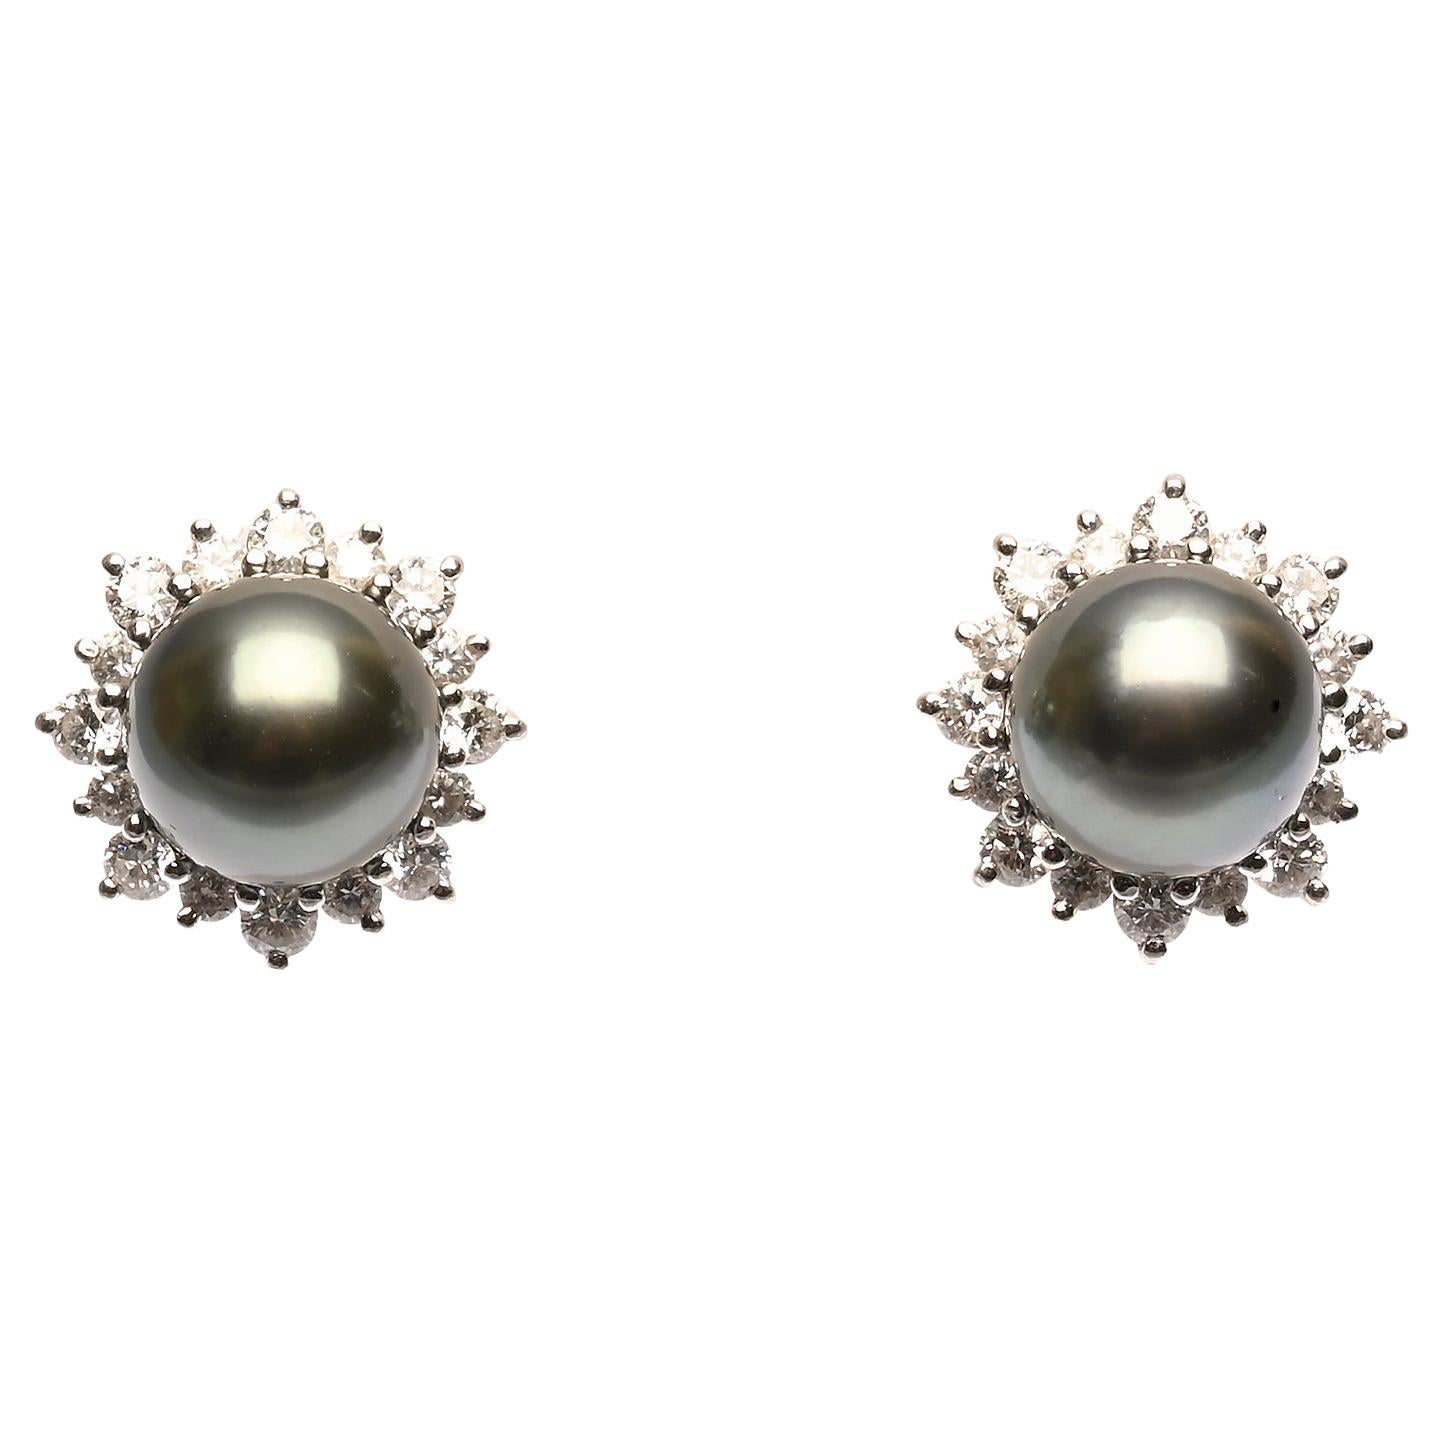 Update 77+ mikimoto 9mm pearl earrings best - esthdonghoadian